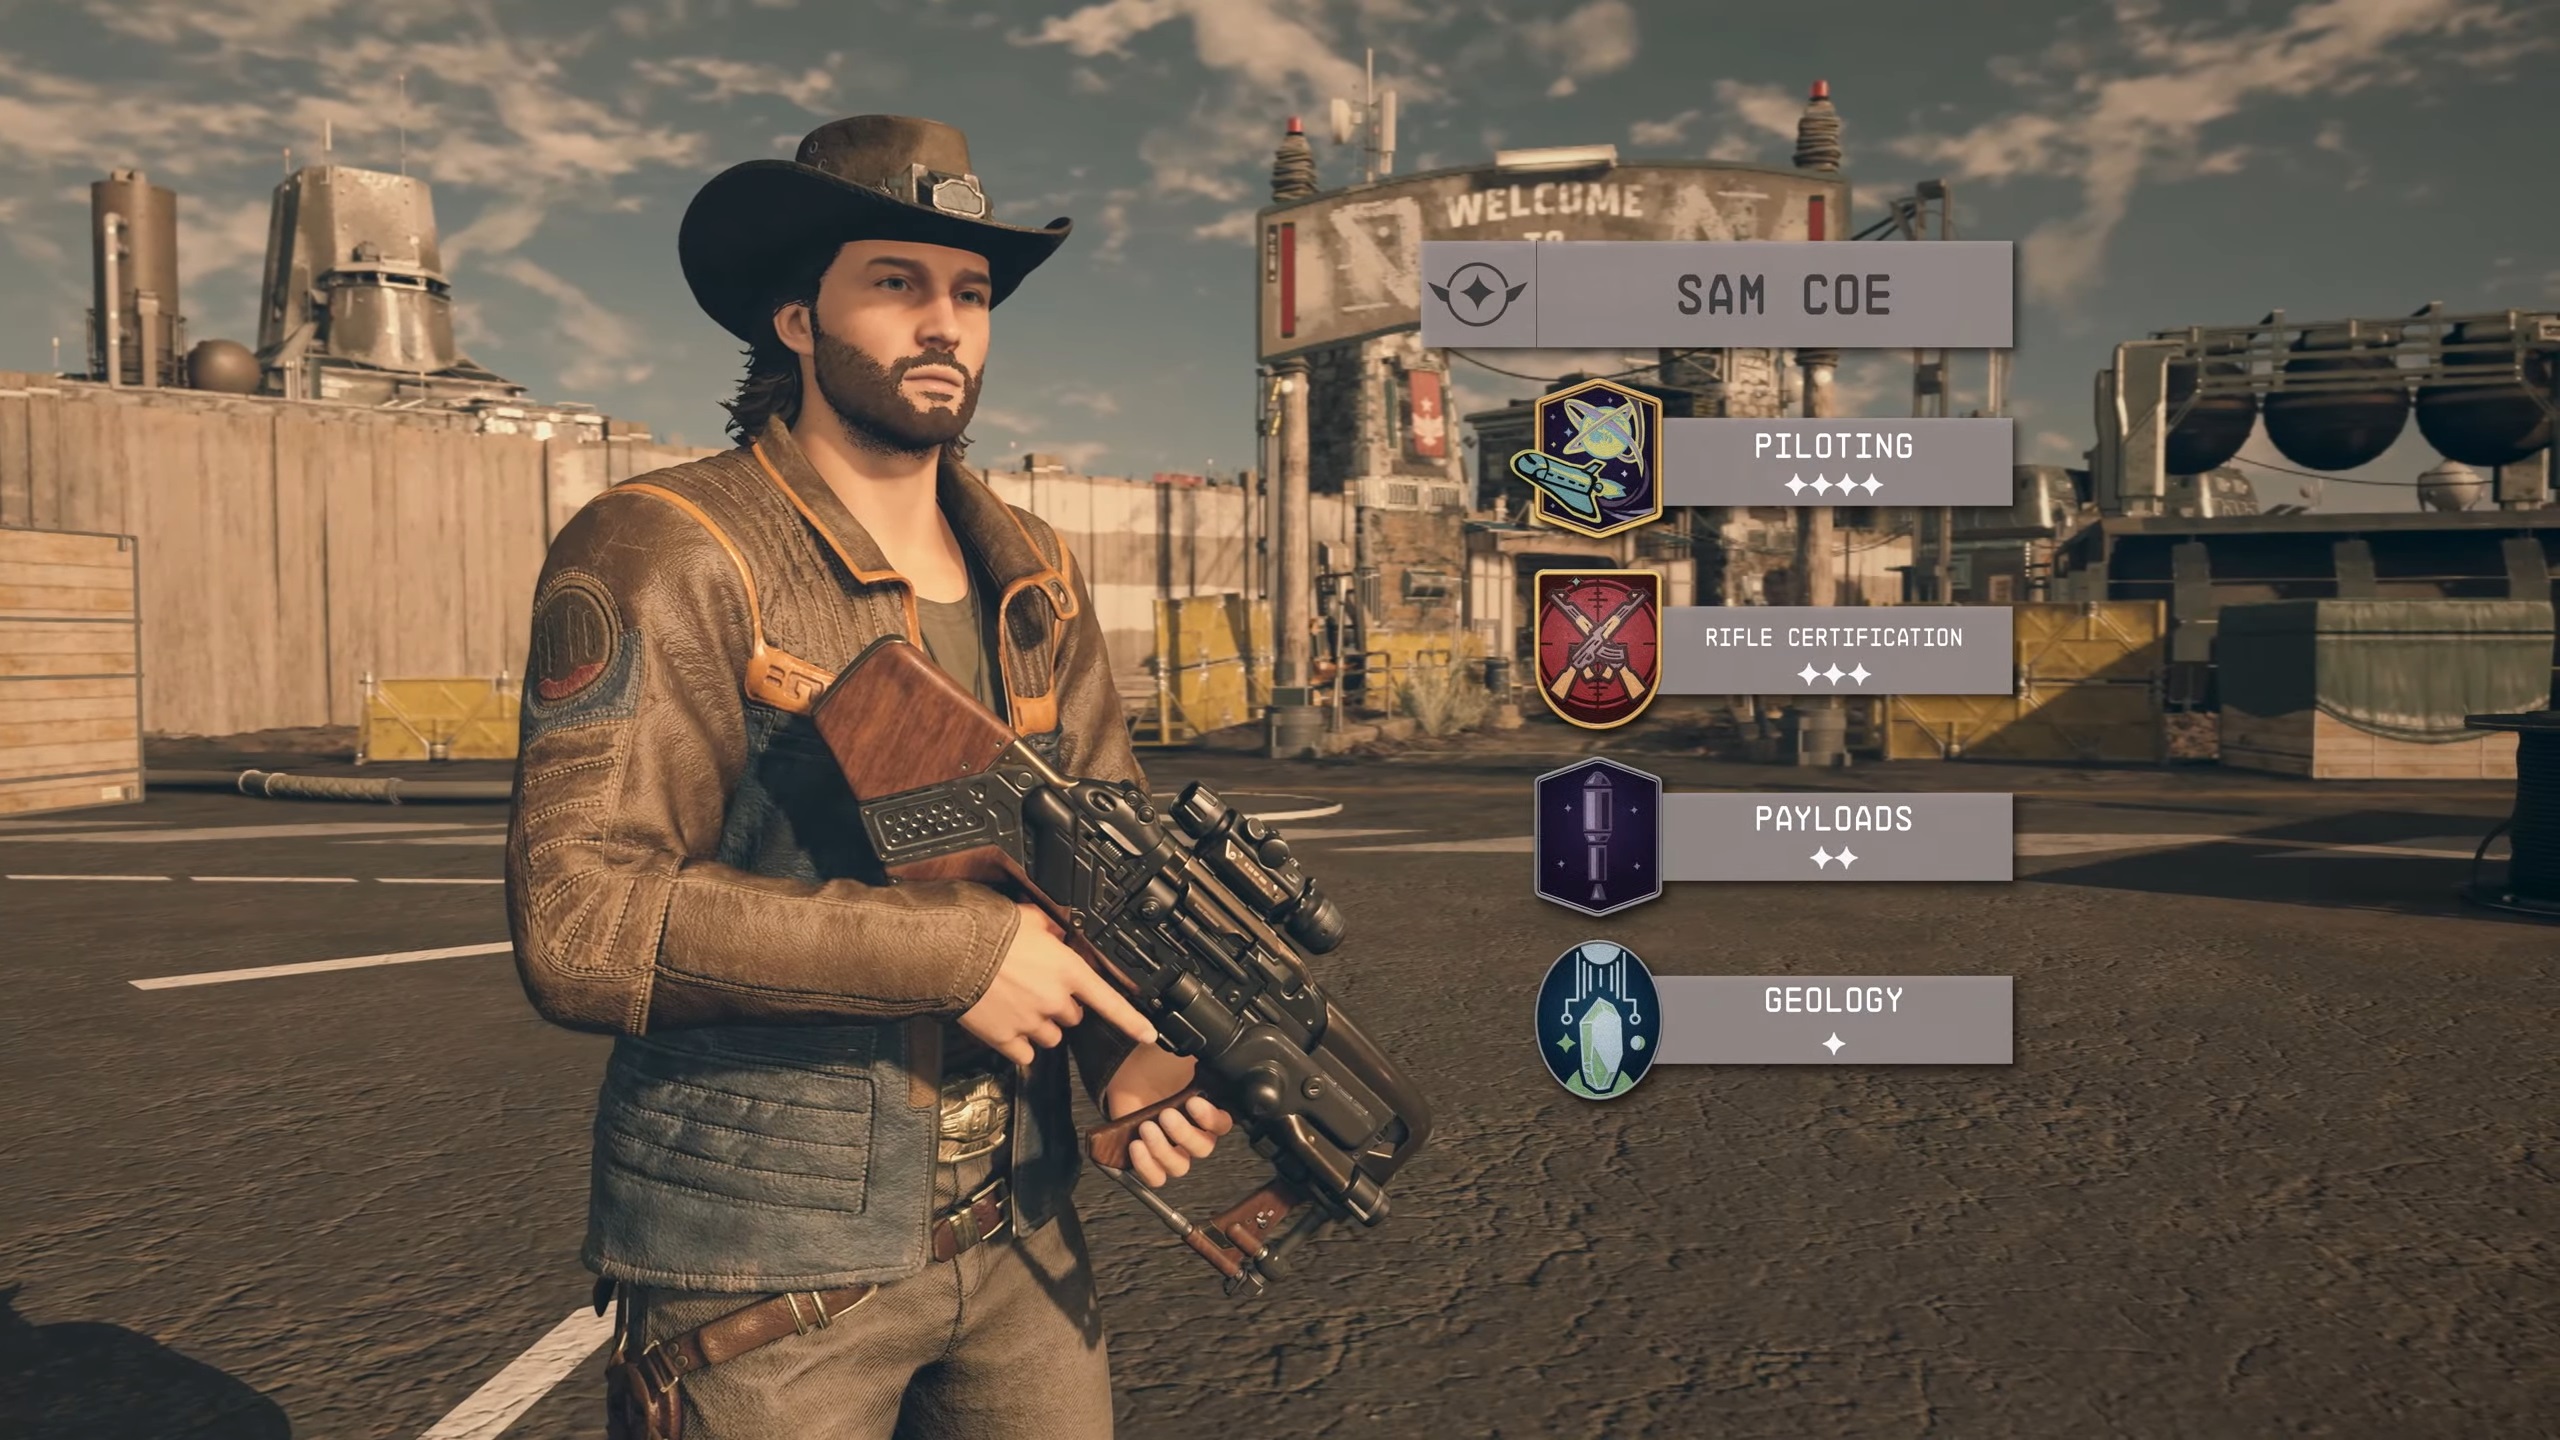 Compañeros de Starfield - Sam Coe, un hombre con vello facial y un sombrero de vaquero sostiene un arma de pie junto a una superposición que muestra sus habilidades